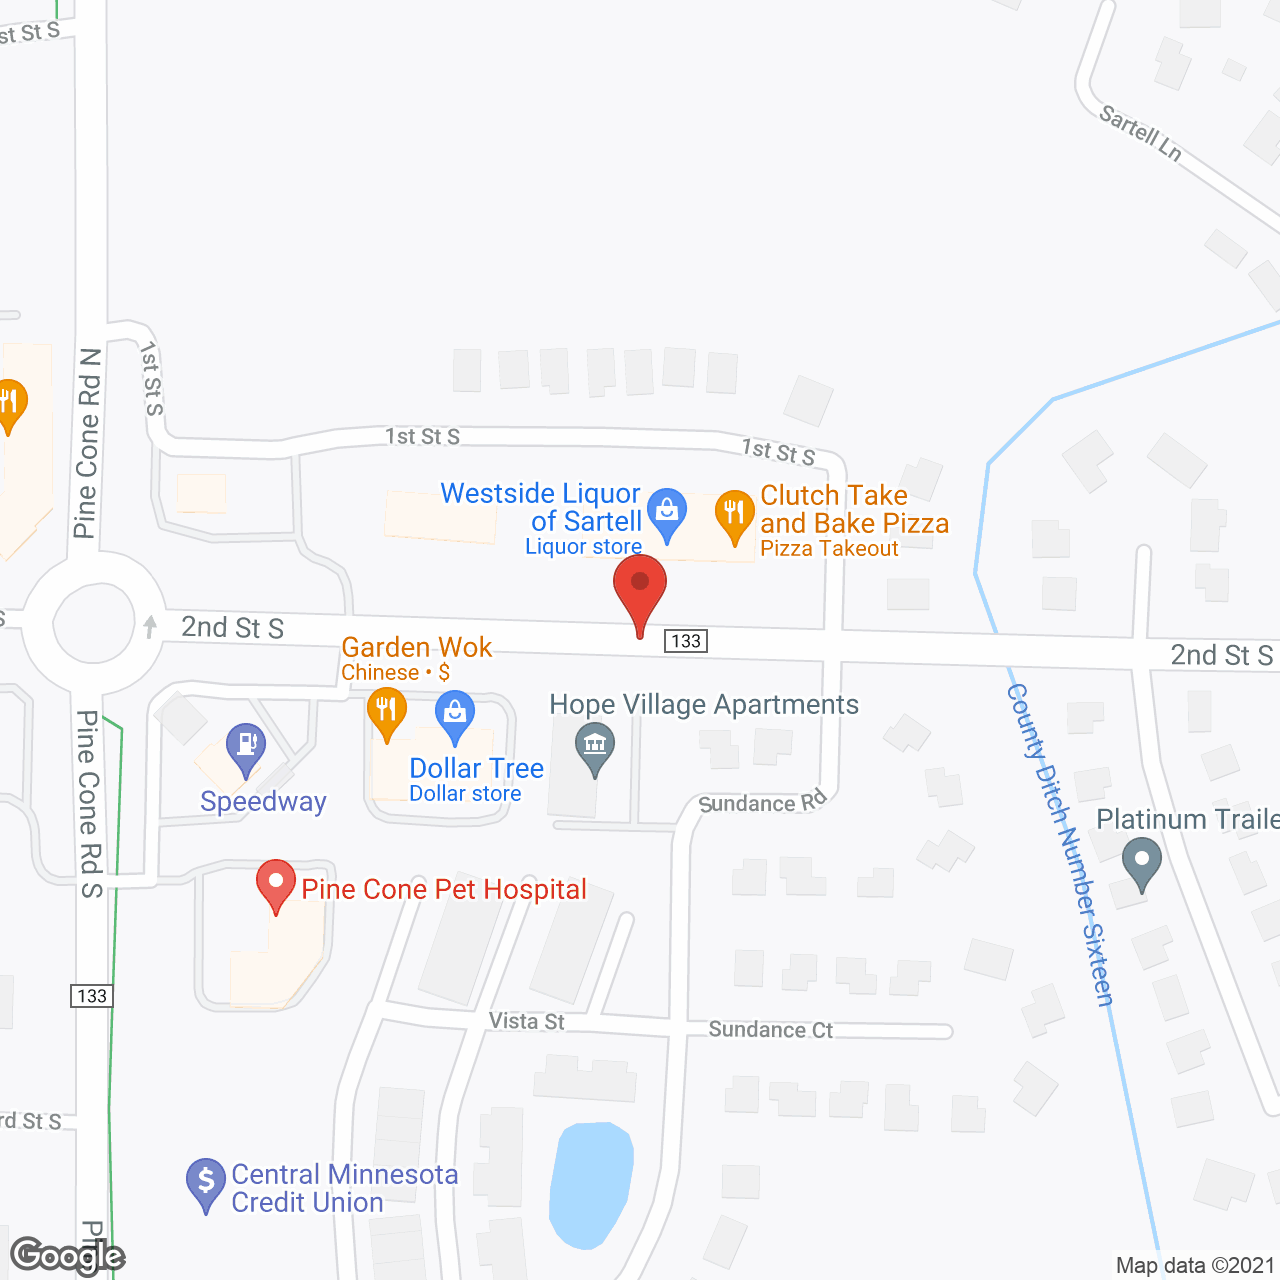 FairWay Ridge Co-Op in google map